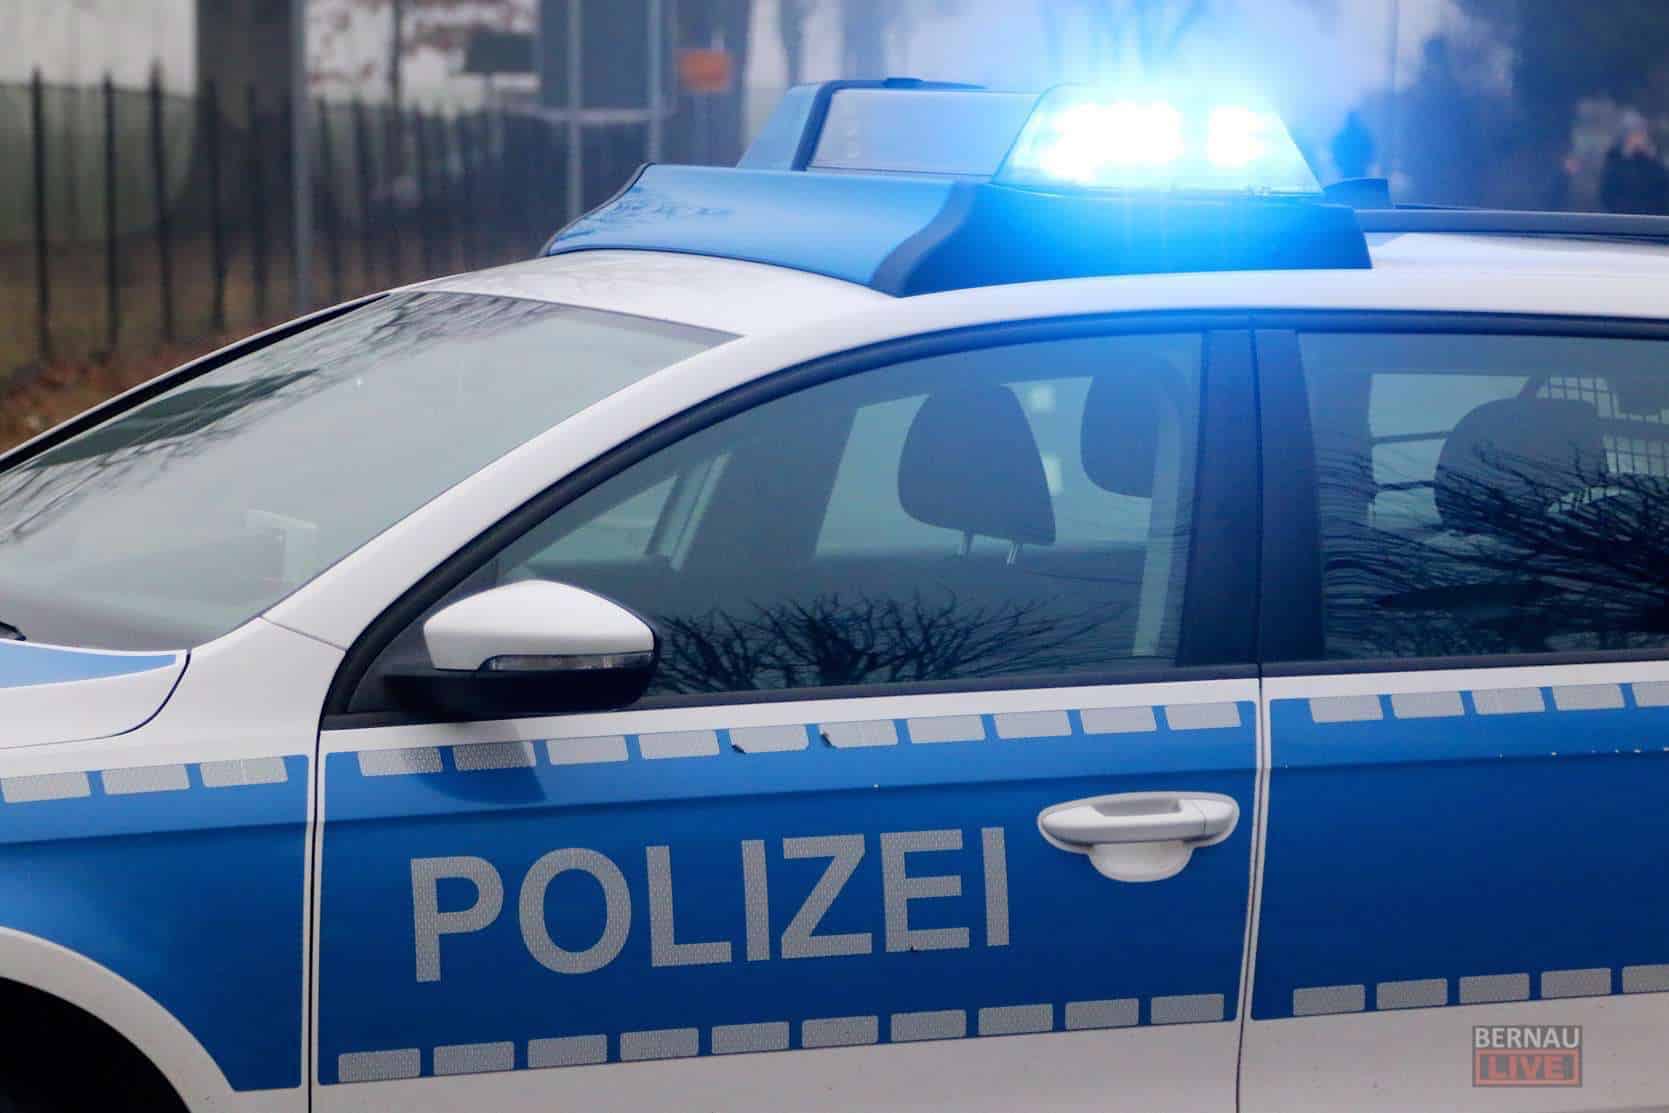 Polizei: Sporthallen und Container in Bernau aufgebrochen